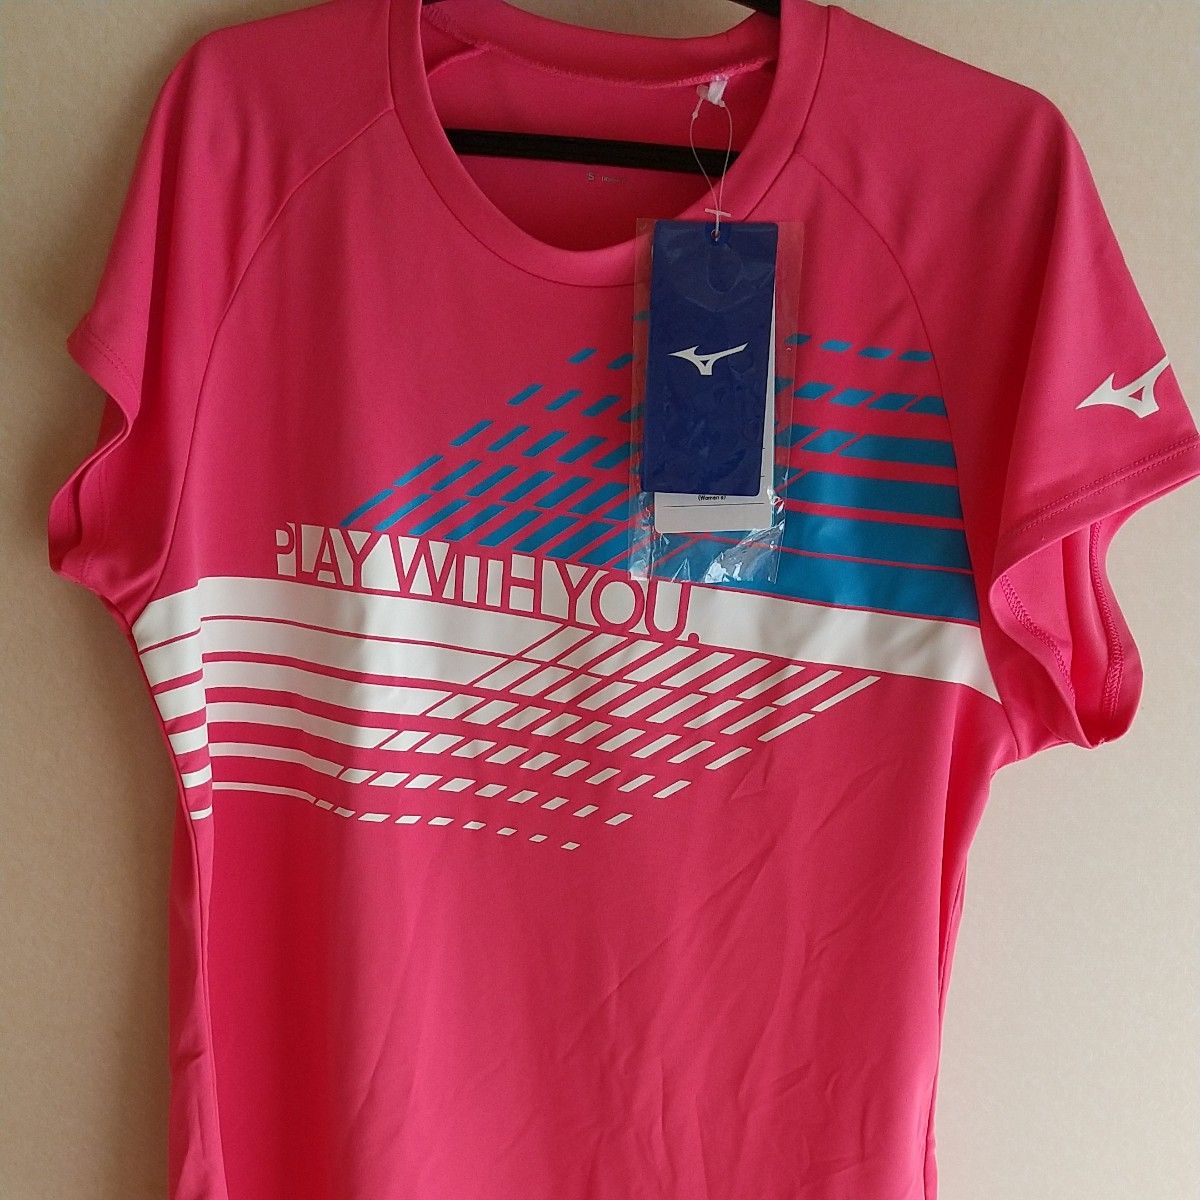 新品タグ付*ミズノ MIZUNO*テニス Tシャツ 半袖 ピンク レディース Sサイズ*スポーツ アウトドア ランニングウエア